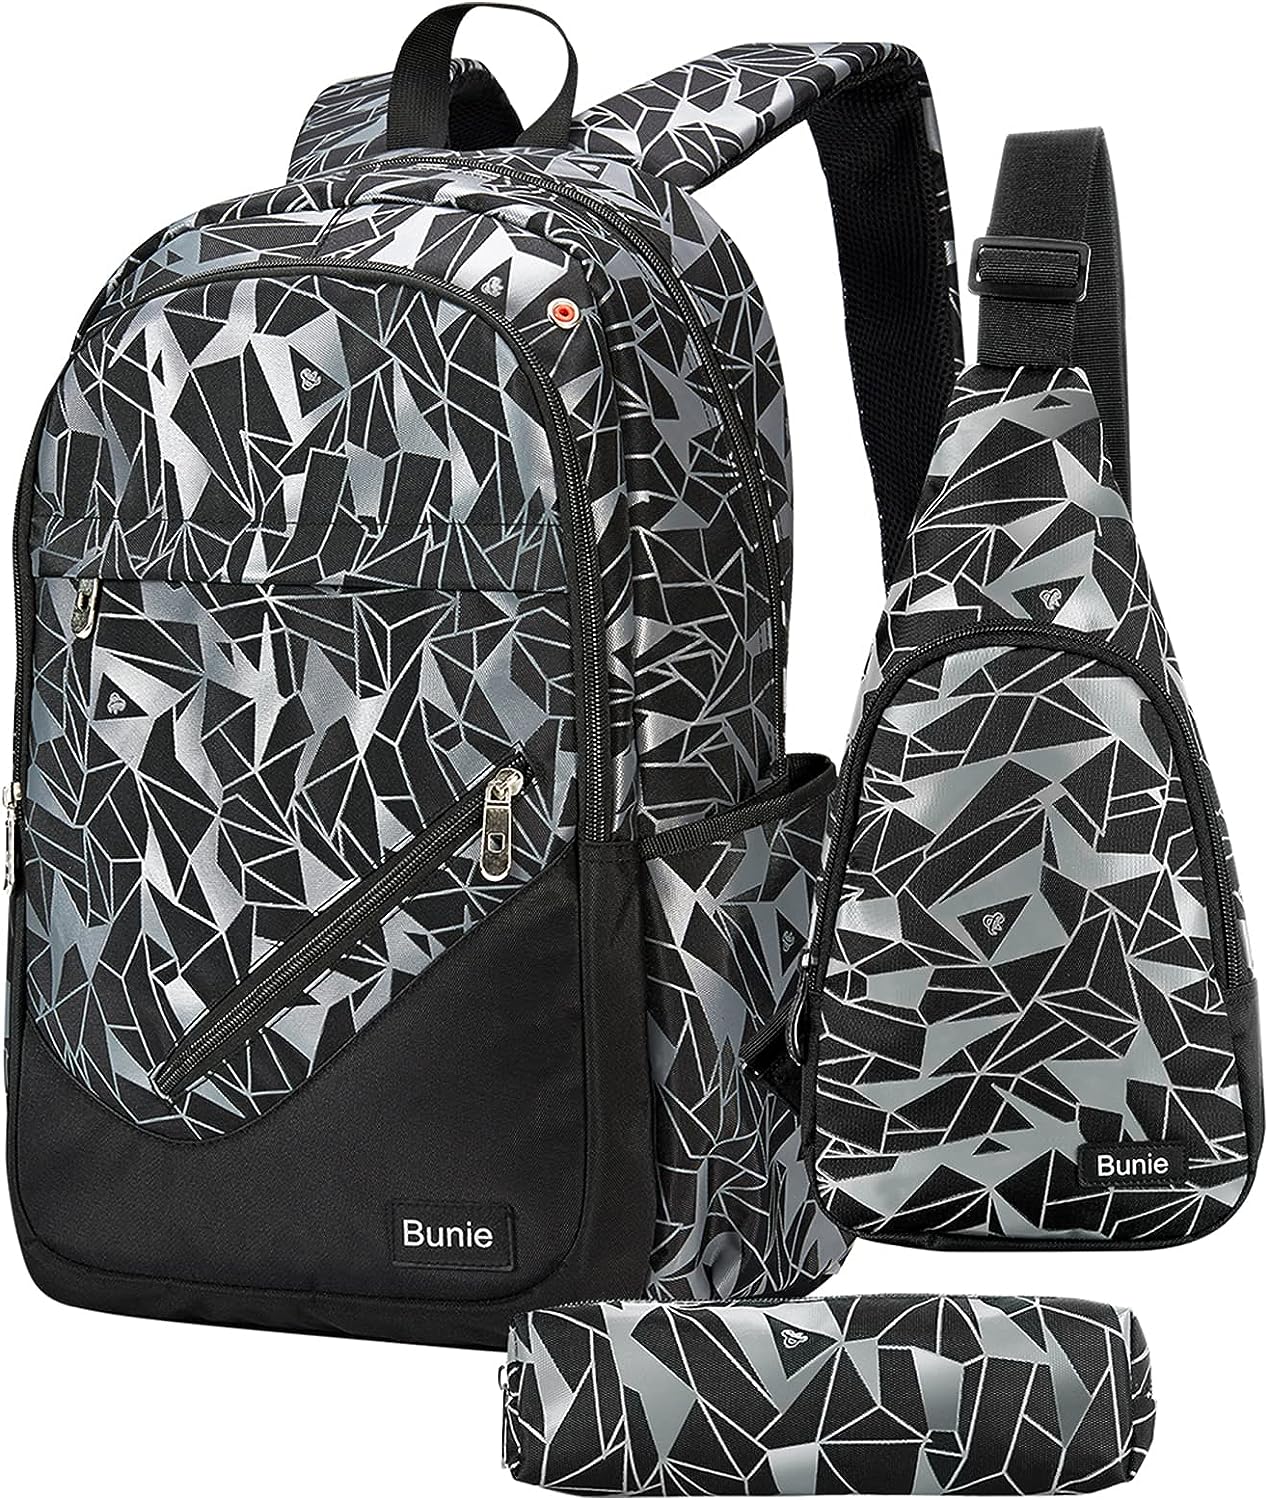 Bunie School Backpack